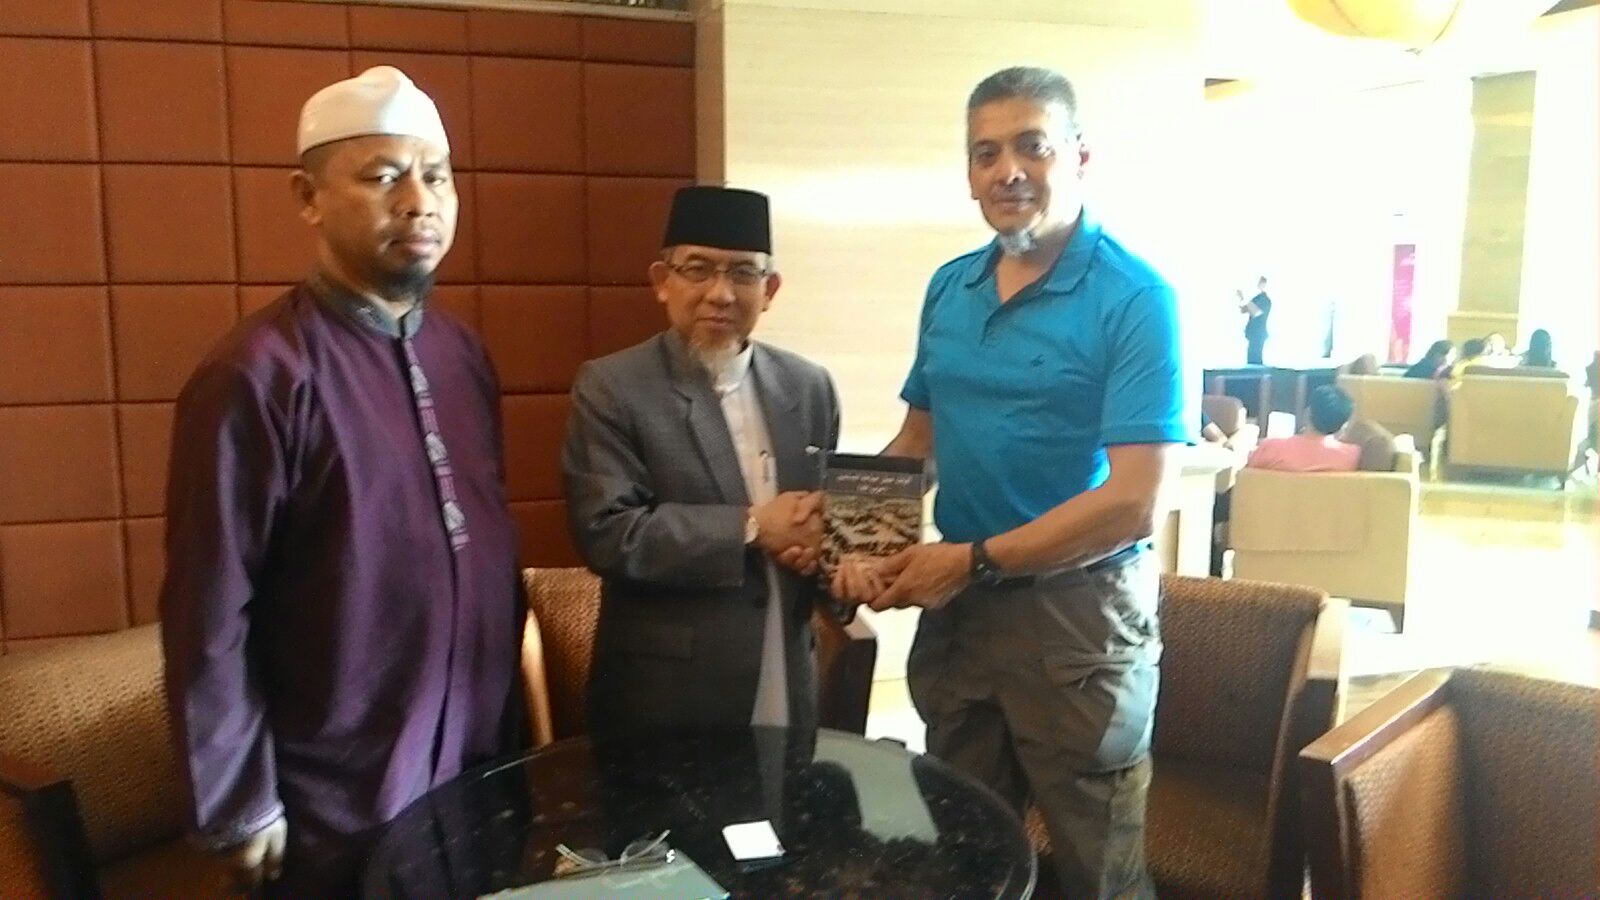 ULAMA AFSEL INGIN BELAJAR TENTANG ISLAM DI INDONESIA